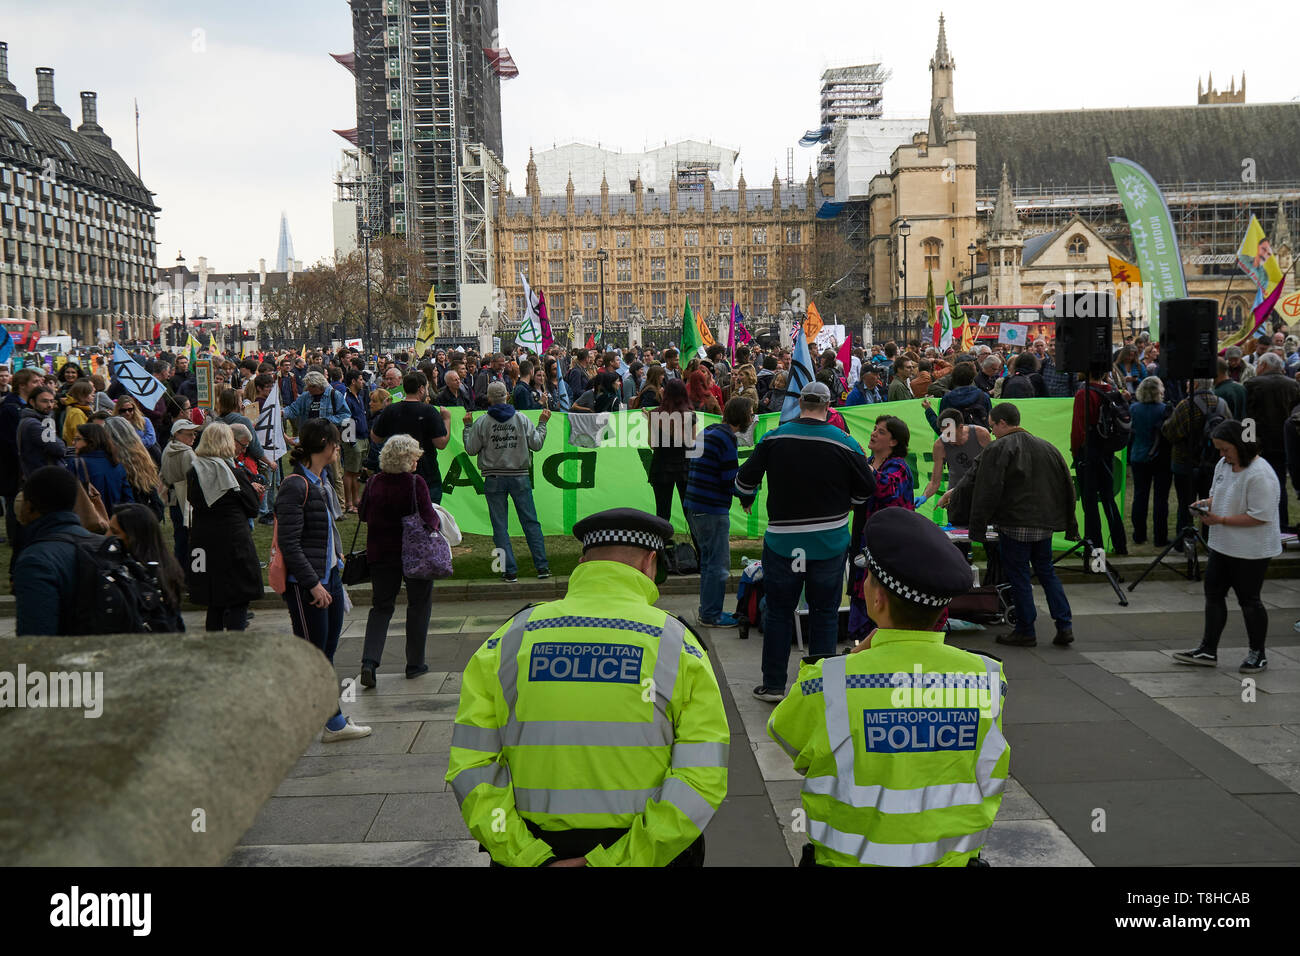 England-May,Londres 1,2019:extinction Rallye de rébellion contre le changement climatique dans la place du Parlement, Londres Banque D'Images